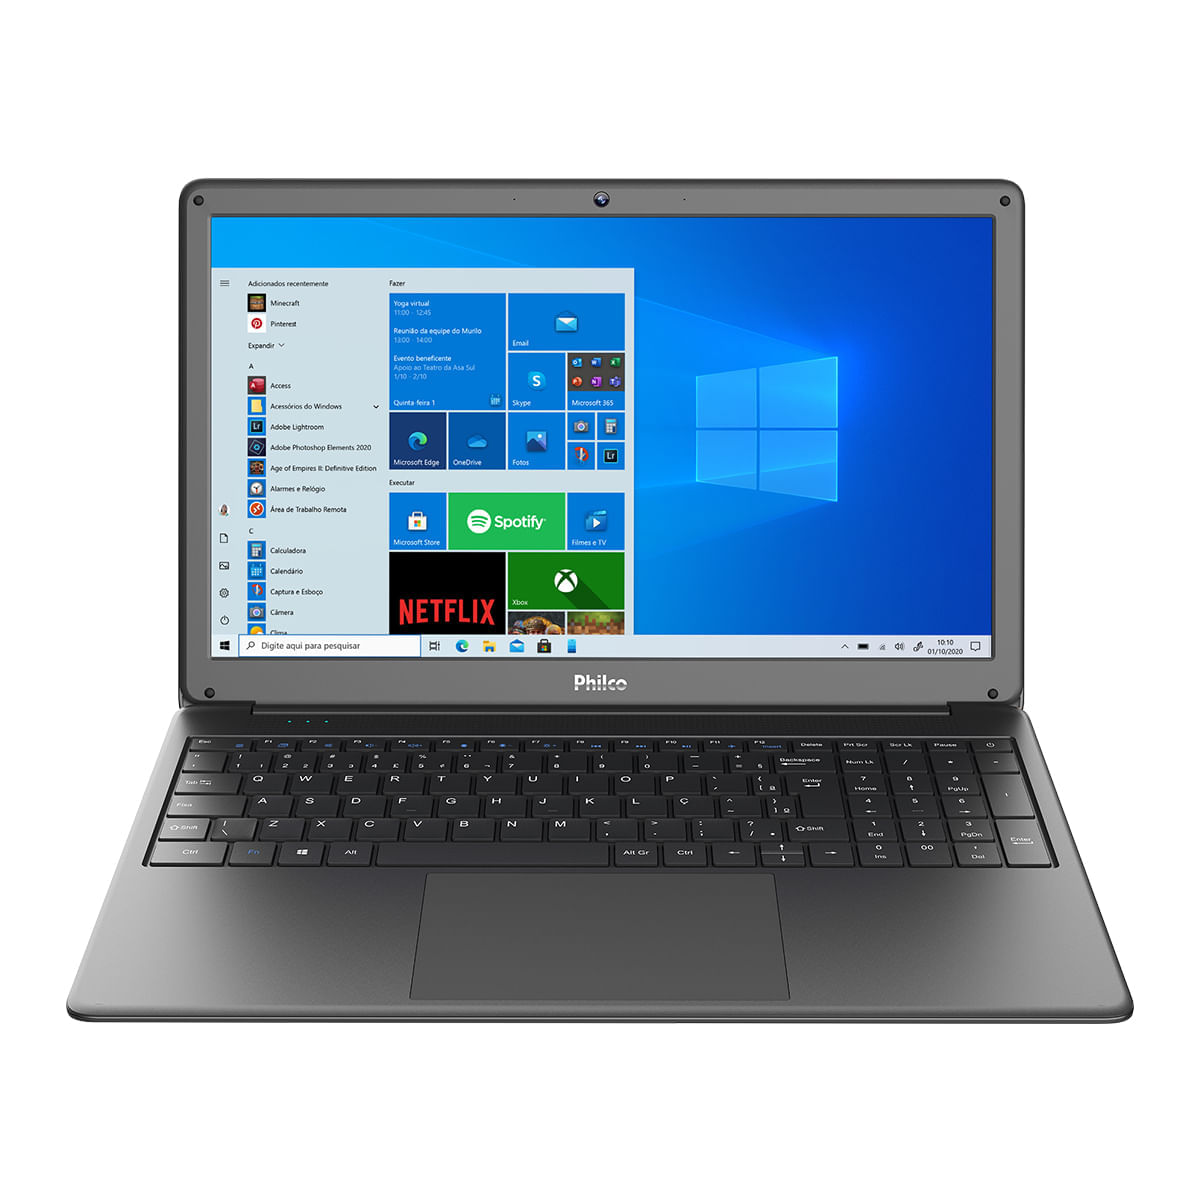 Notebook - Philco Pnb15 I3-5005u 1.00ghz 4gb 1tb Padrão Intel Hd Graphics Windows 10 Home 15,6